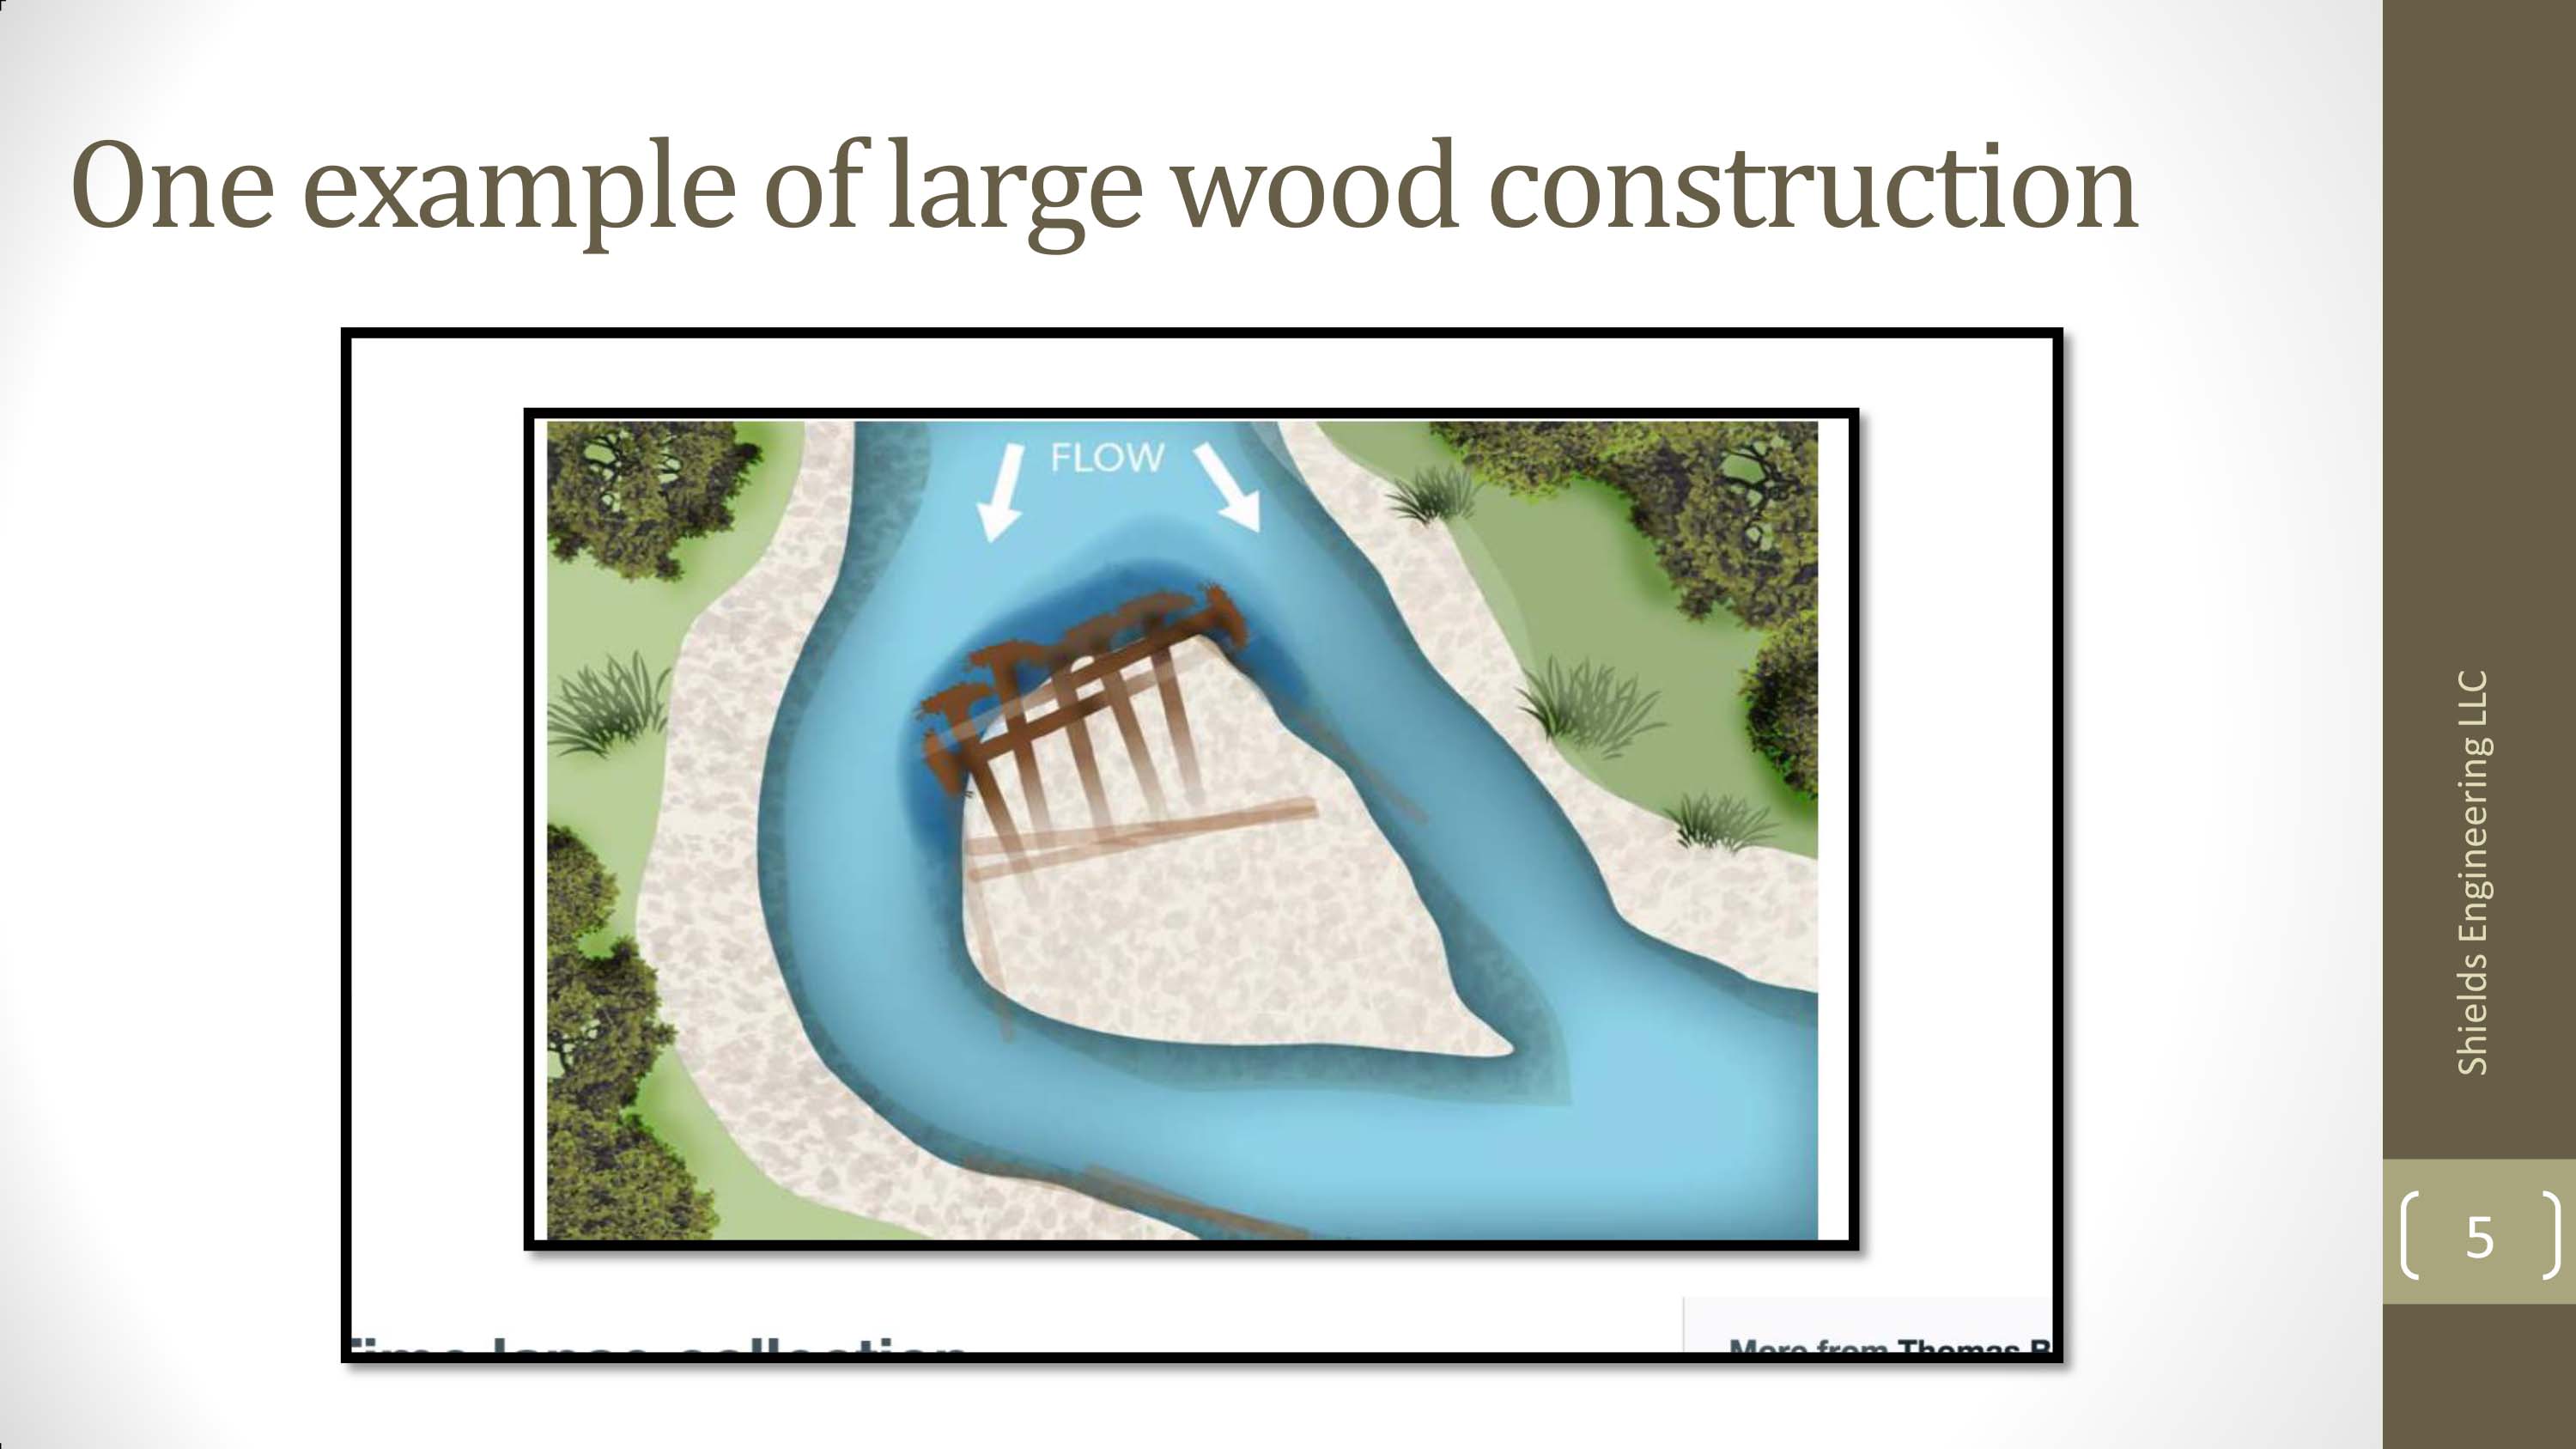 Introducción Planeamiento y diseño para la rehabilitación de ríos usando grandes restos de madera  